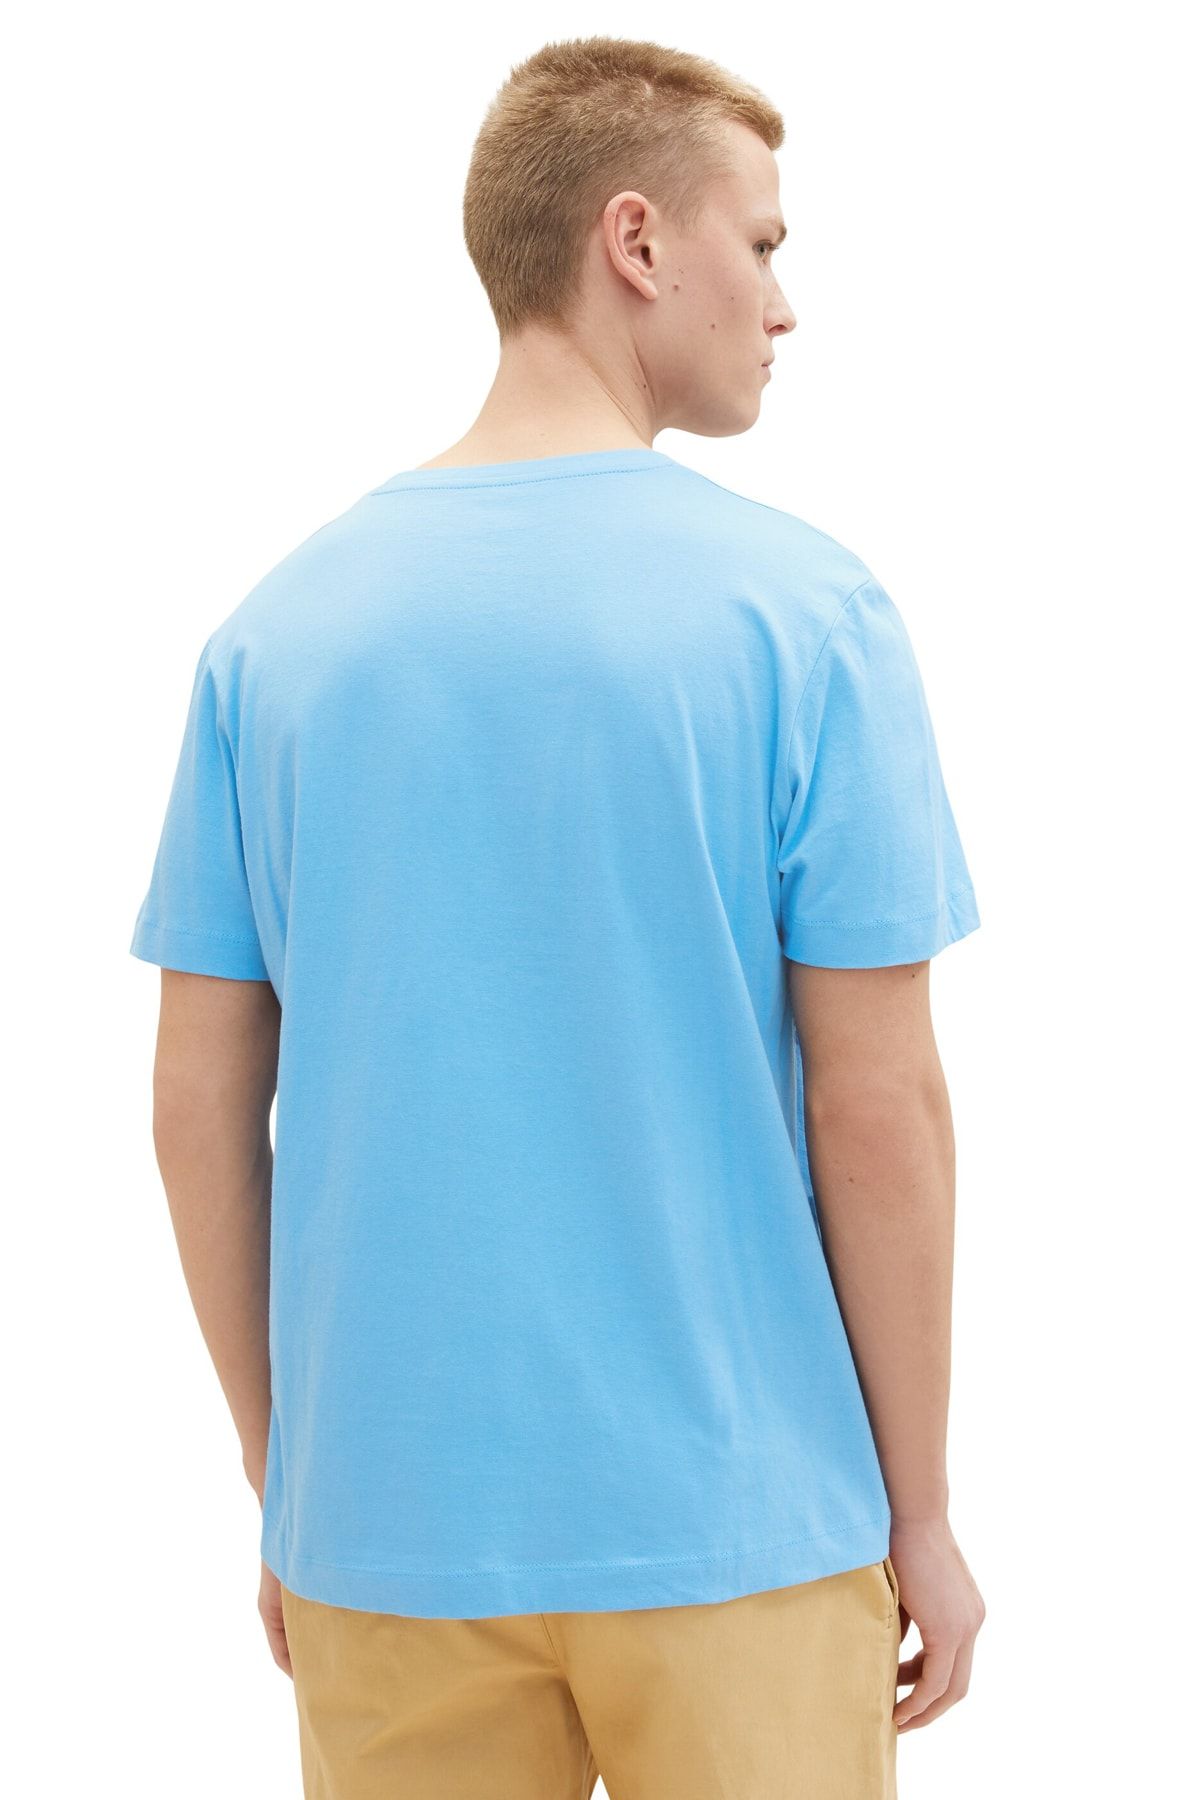 Tom Tailor blue rainy T-Shirt Denim sky Trendyol Men\'s 